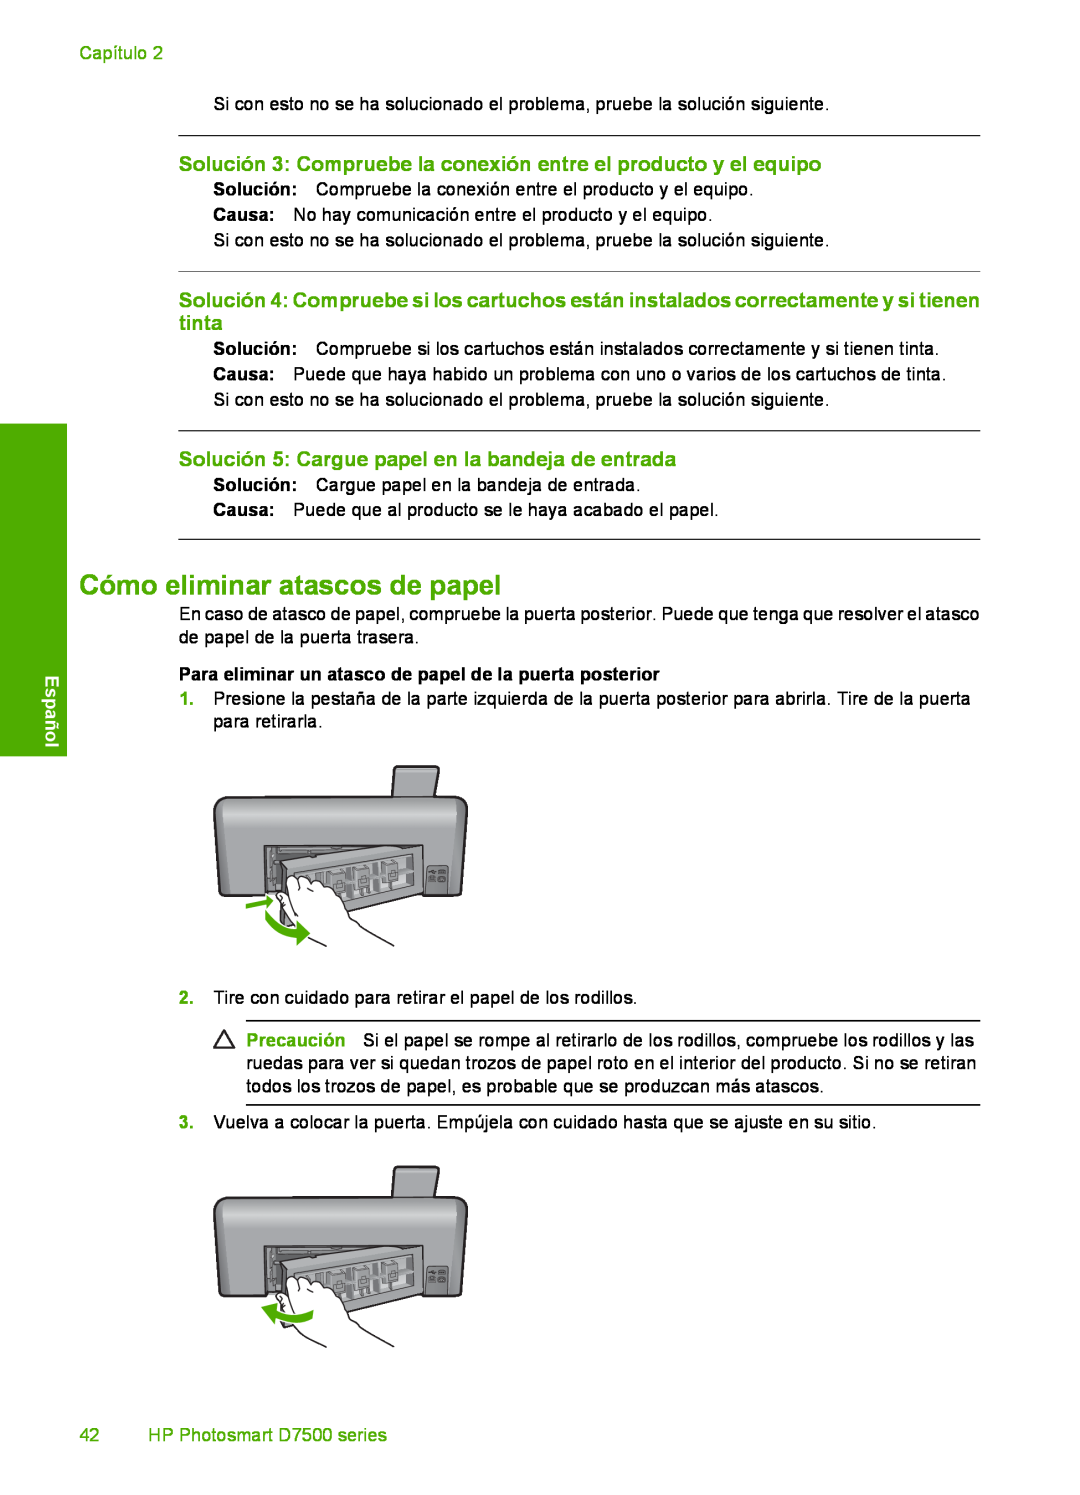 HP D7560 Cómo eliminar atascos de papel, Solución 3 Compruebe la conexión entre el producto y el equipo, Capítulo, Español 